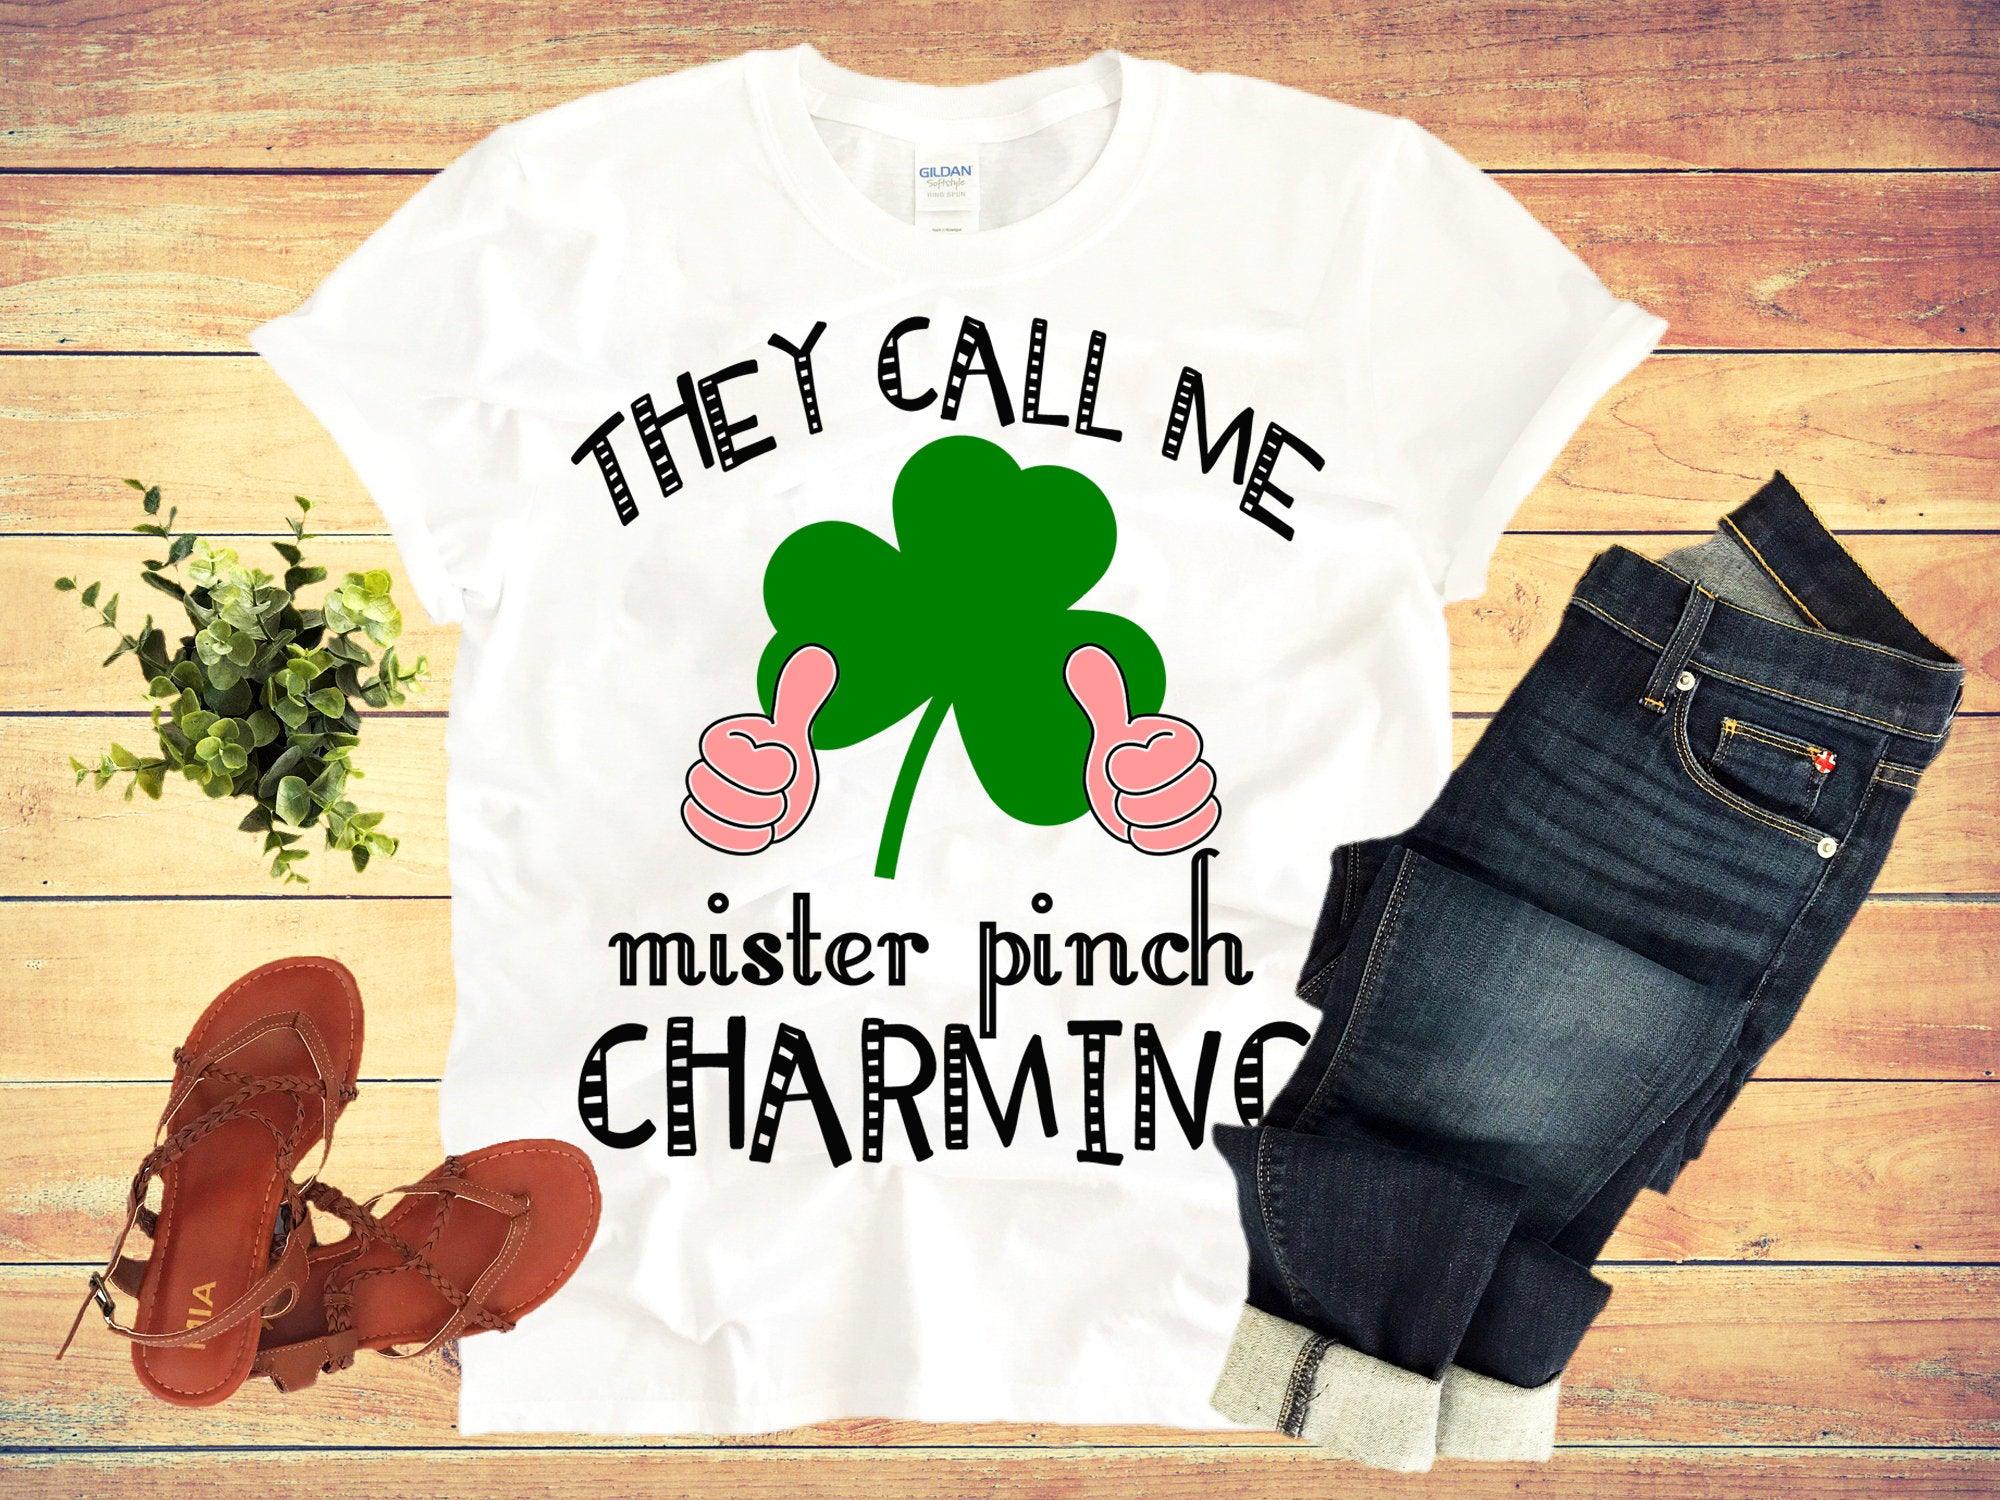 Με αποκαλούν Pinch Mister Charming, μπλουζάκια του St. Patrick's Day - plusminusco.com